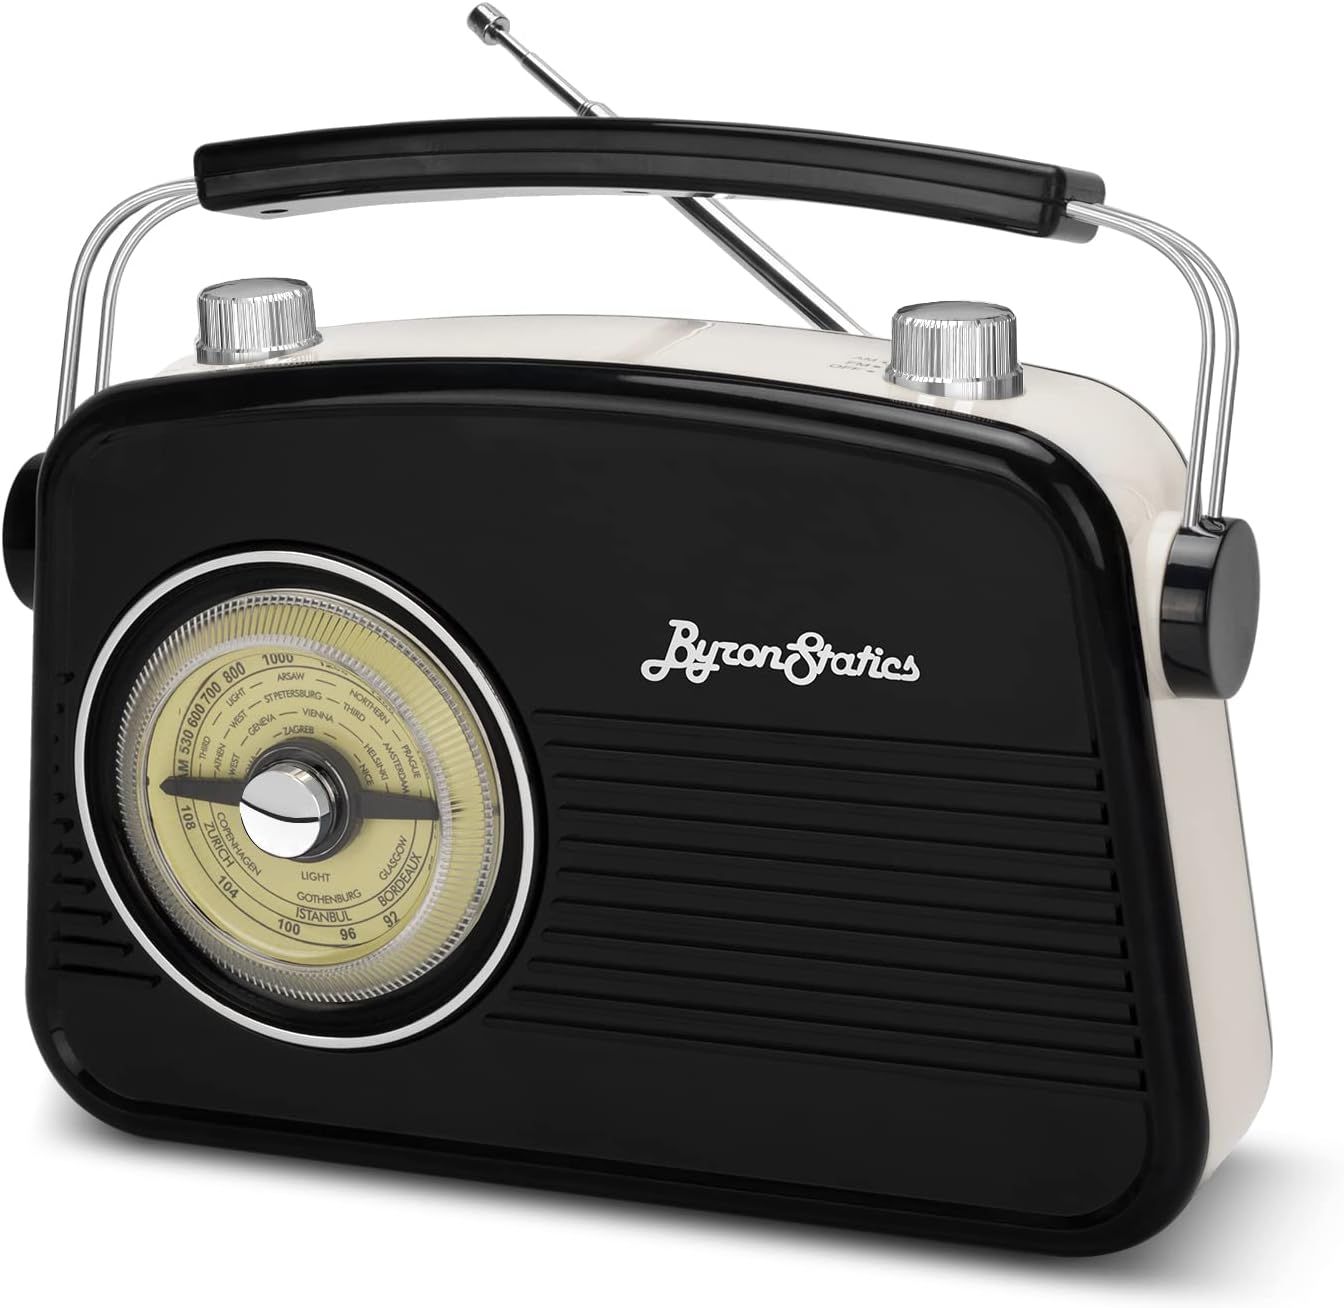 ByronStatics Radio AM FM negra Pequeñas radios portátiles vintageretro con